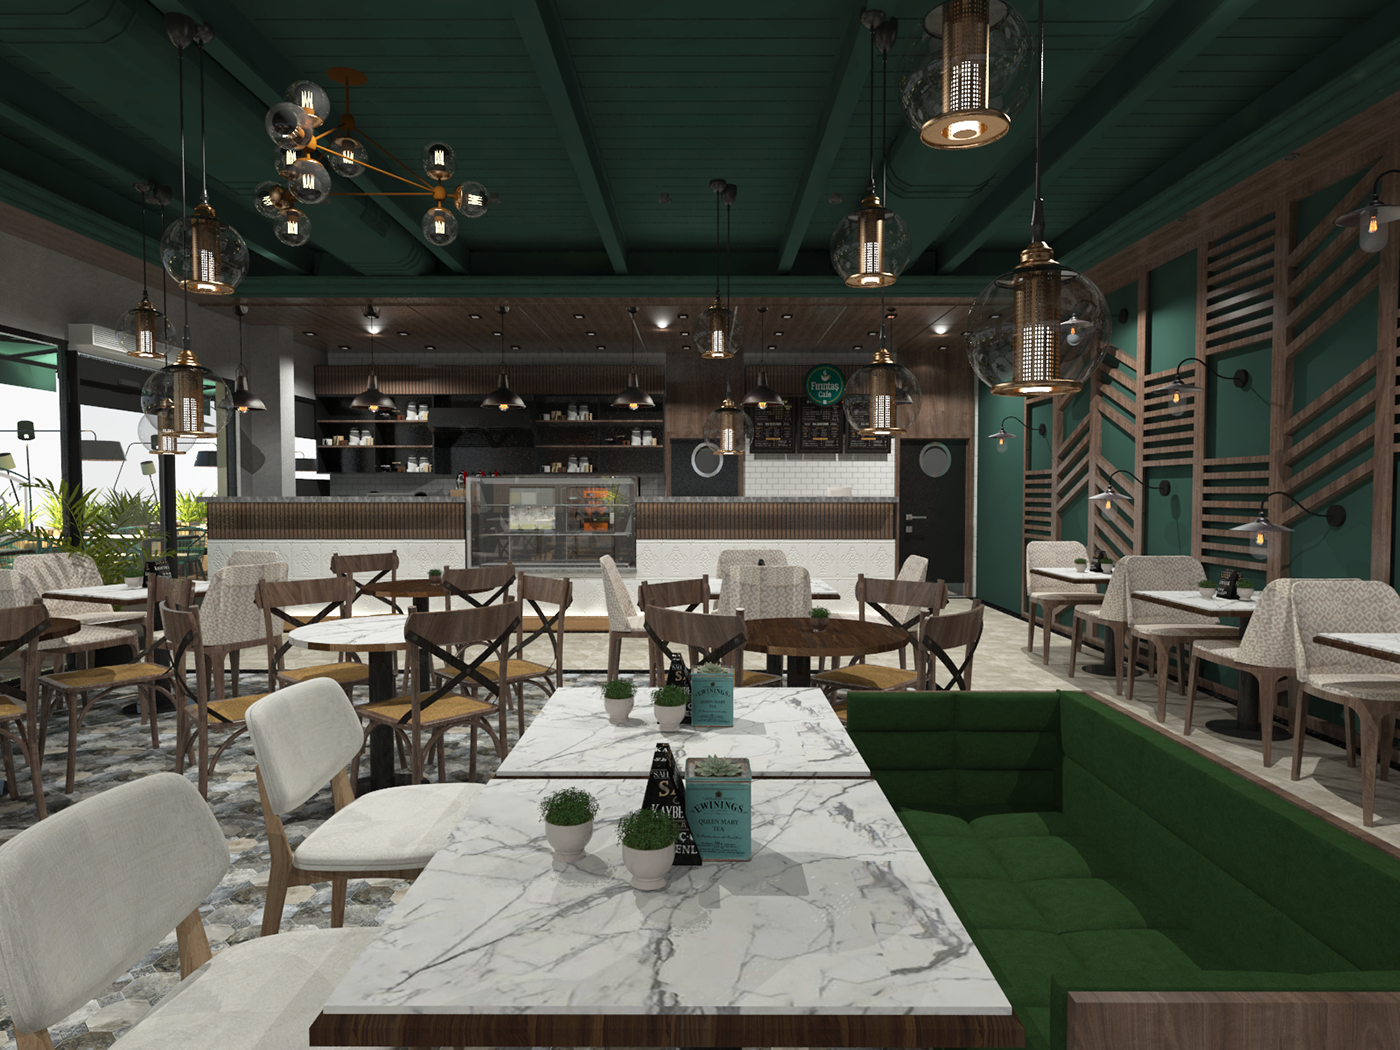 furnituredesign keyshot 3d modeling cafe Coffee coffee shop concept interior design  modern restaurant